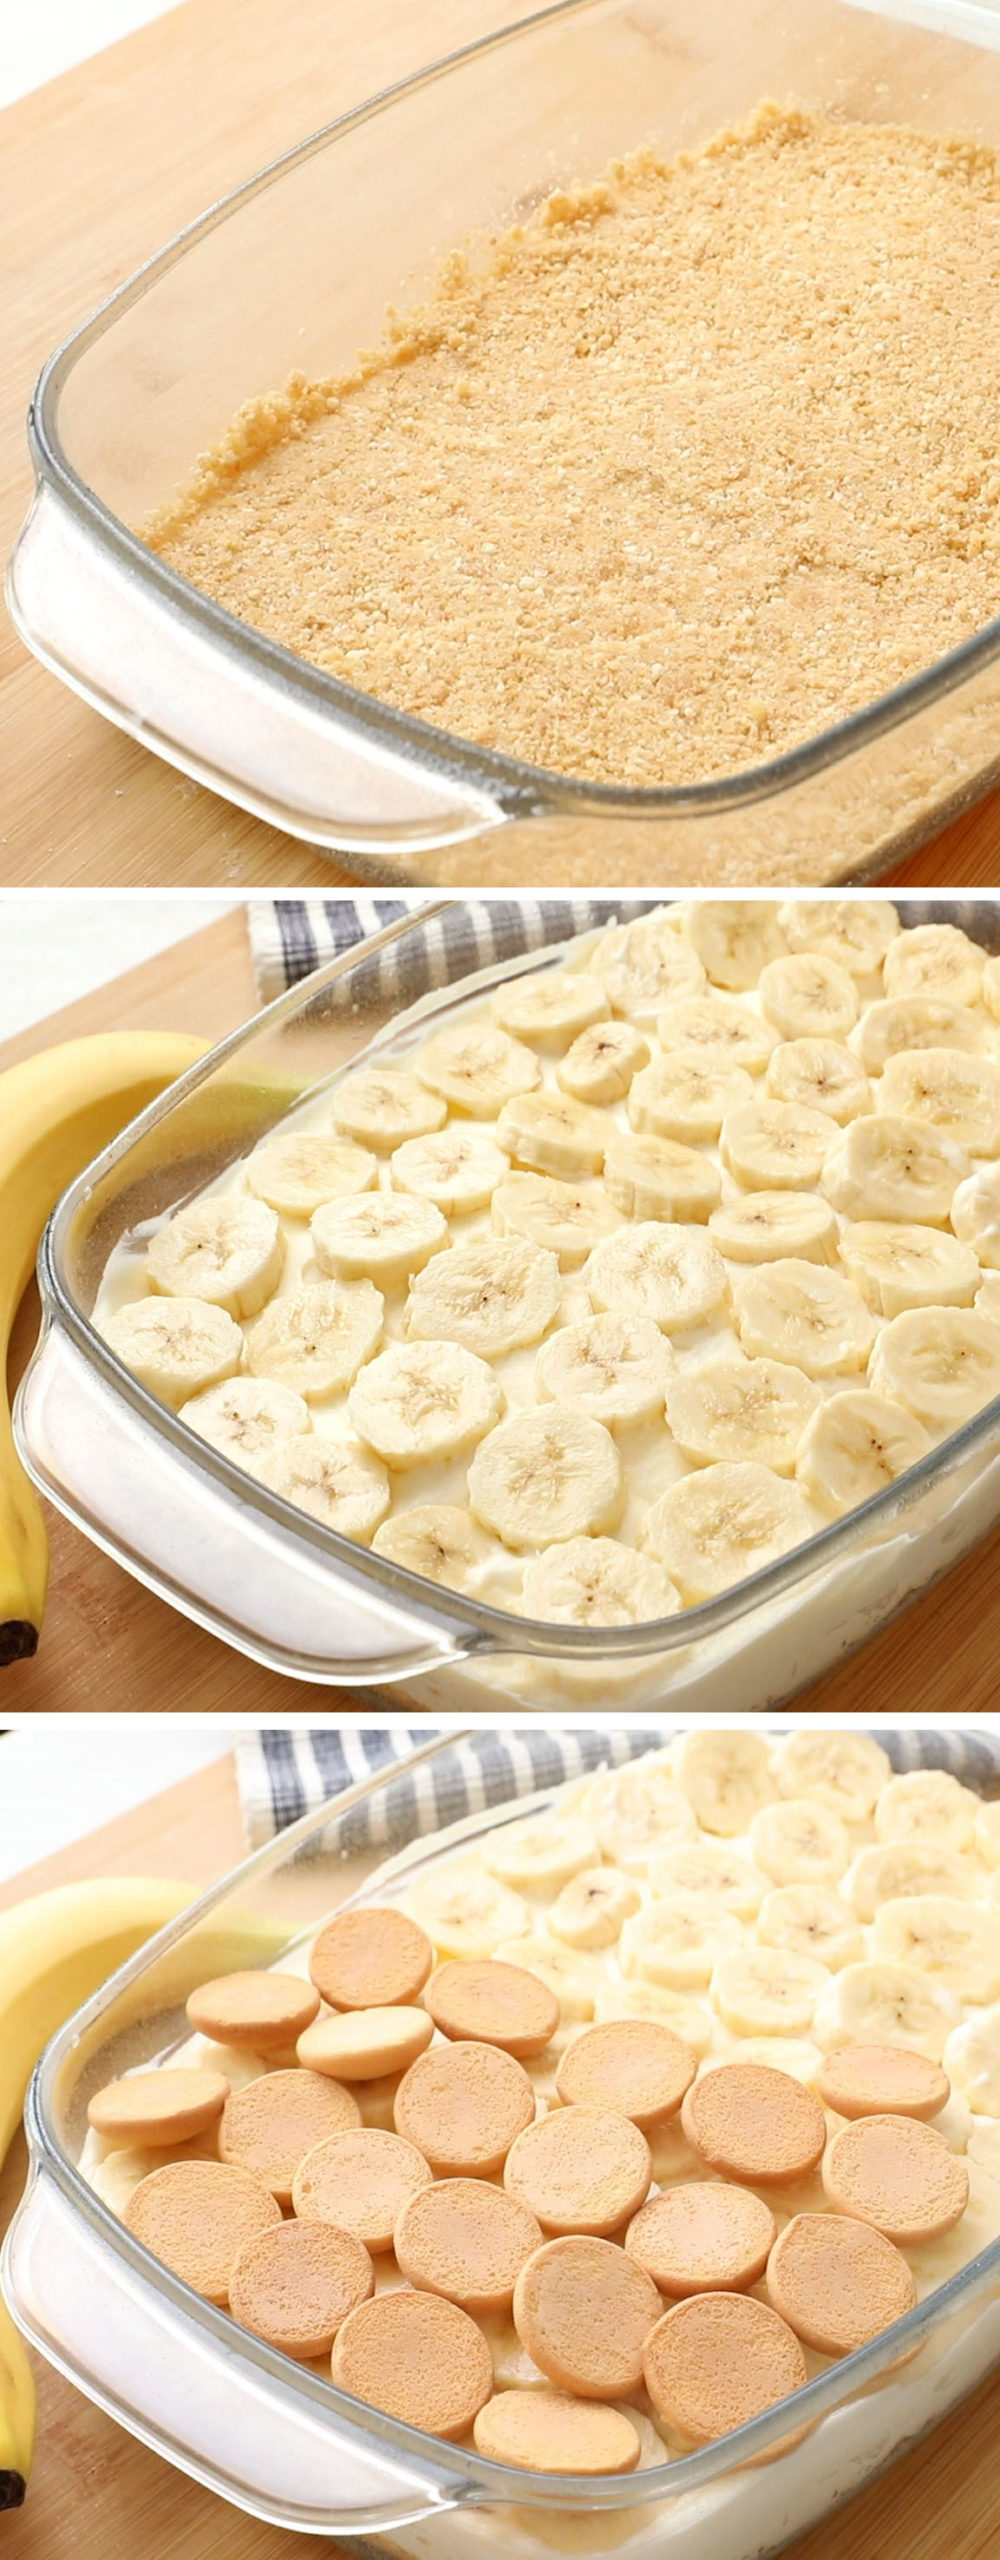 The BEST Banana Pudding recipe you’ll ever try! No Bake Banana Pudding Lasagna made with layers of fresh bananas, Nilla wafers, fresh whipped cream, and vanilla or banana pudding!